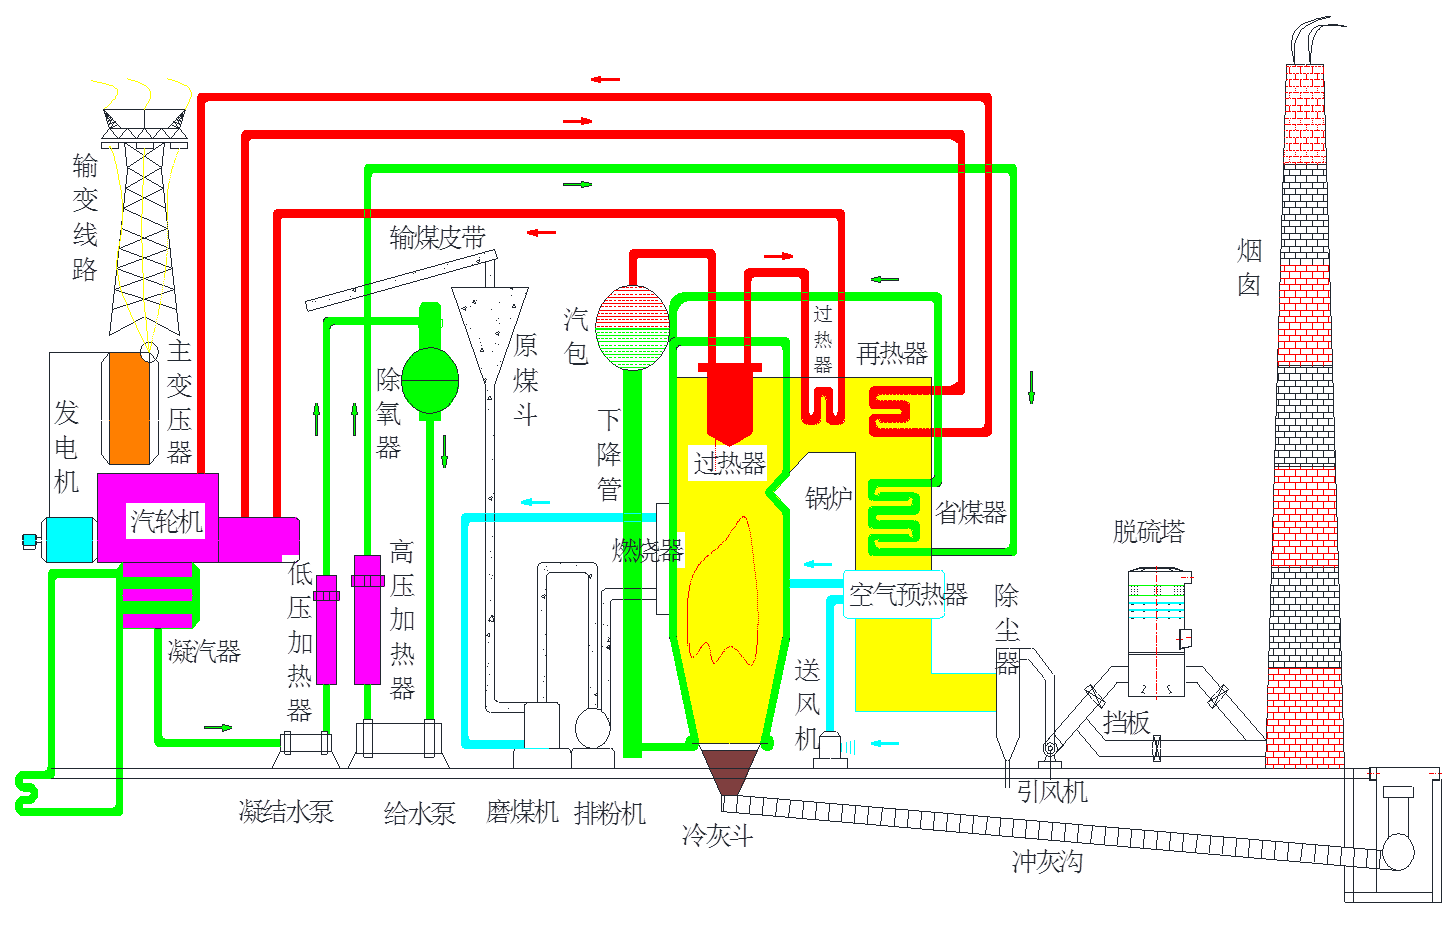 燃煤发电生产流程图